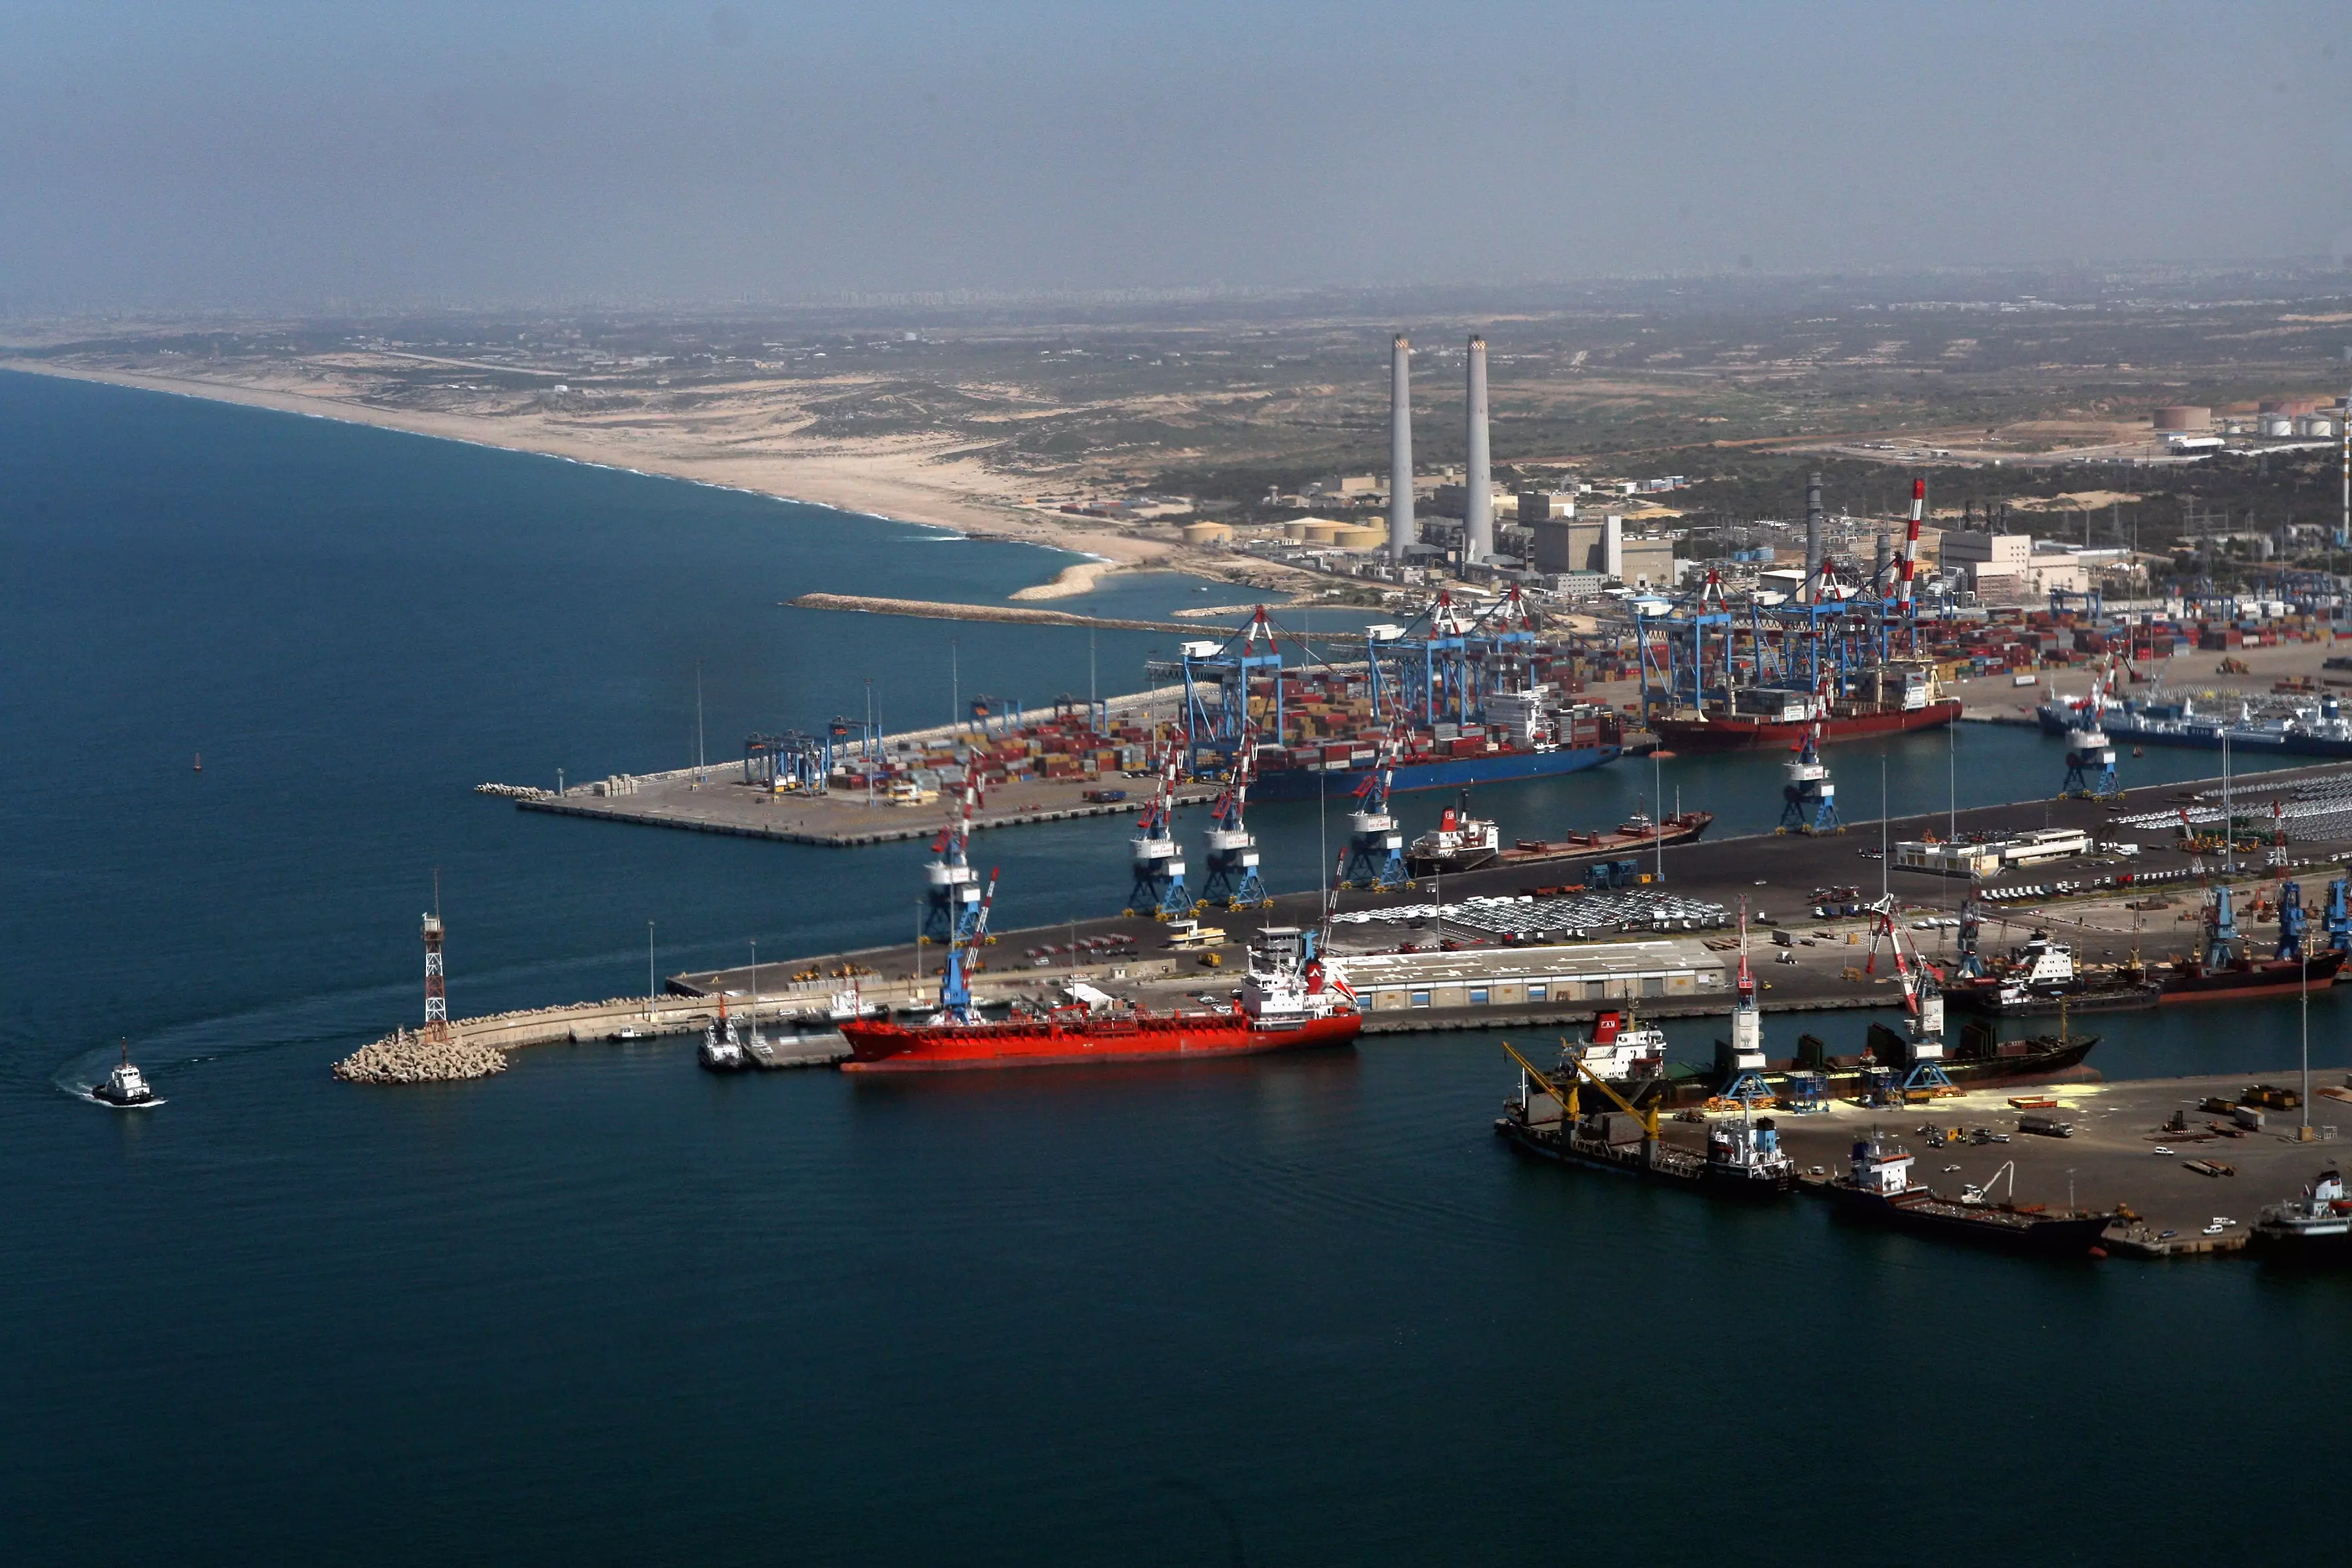 מדובר במכרז לאיוש משרות סוורים המתנהל בנמל מאוגוסט 2012